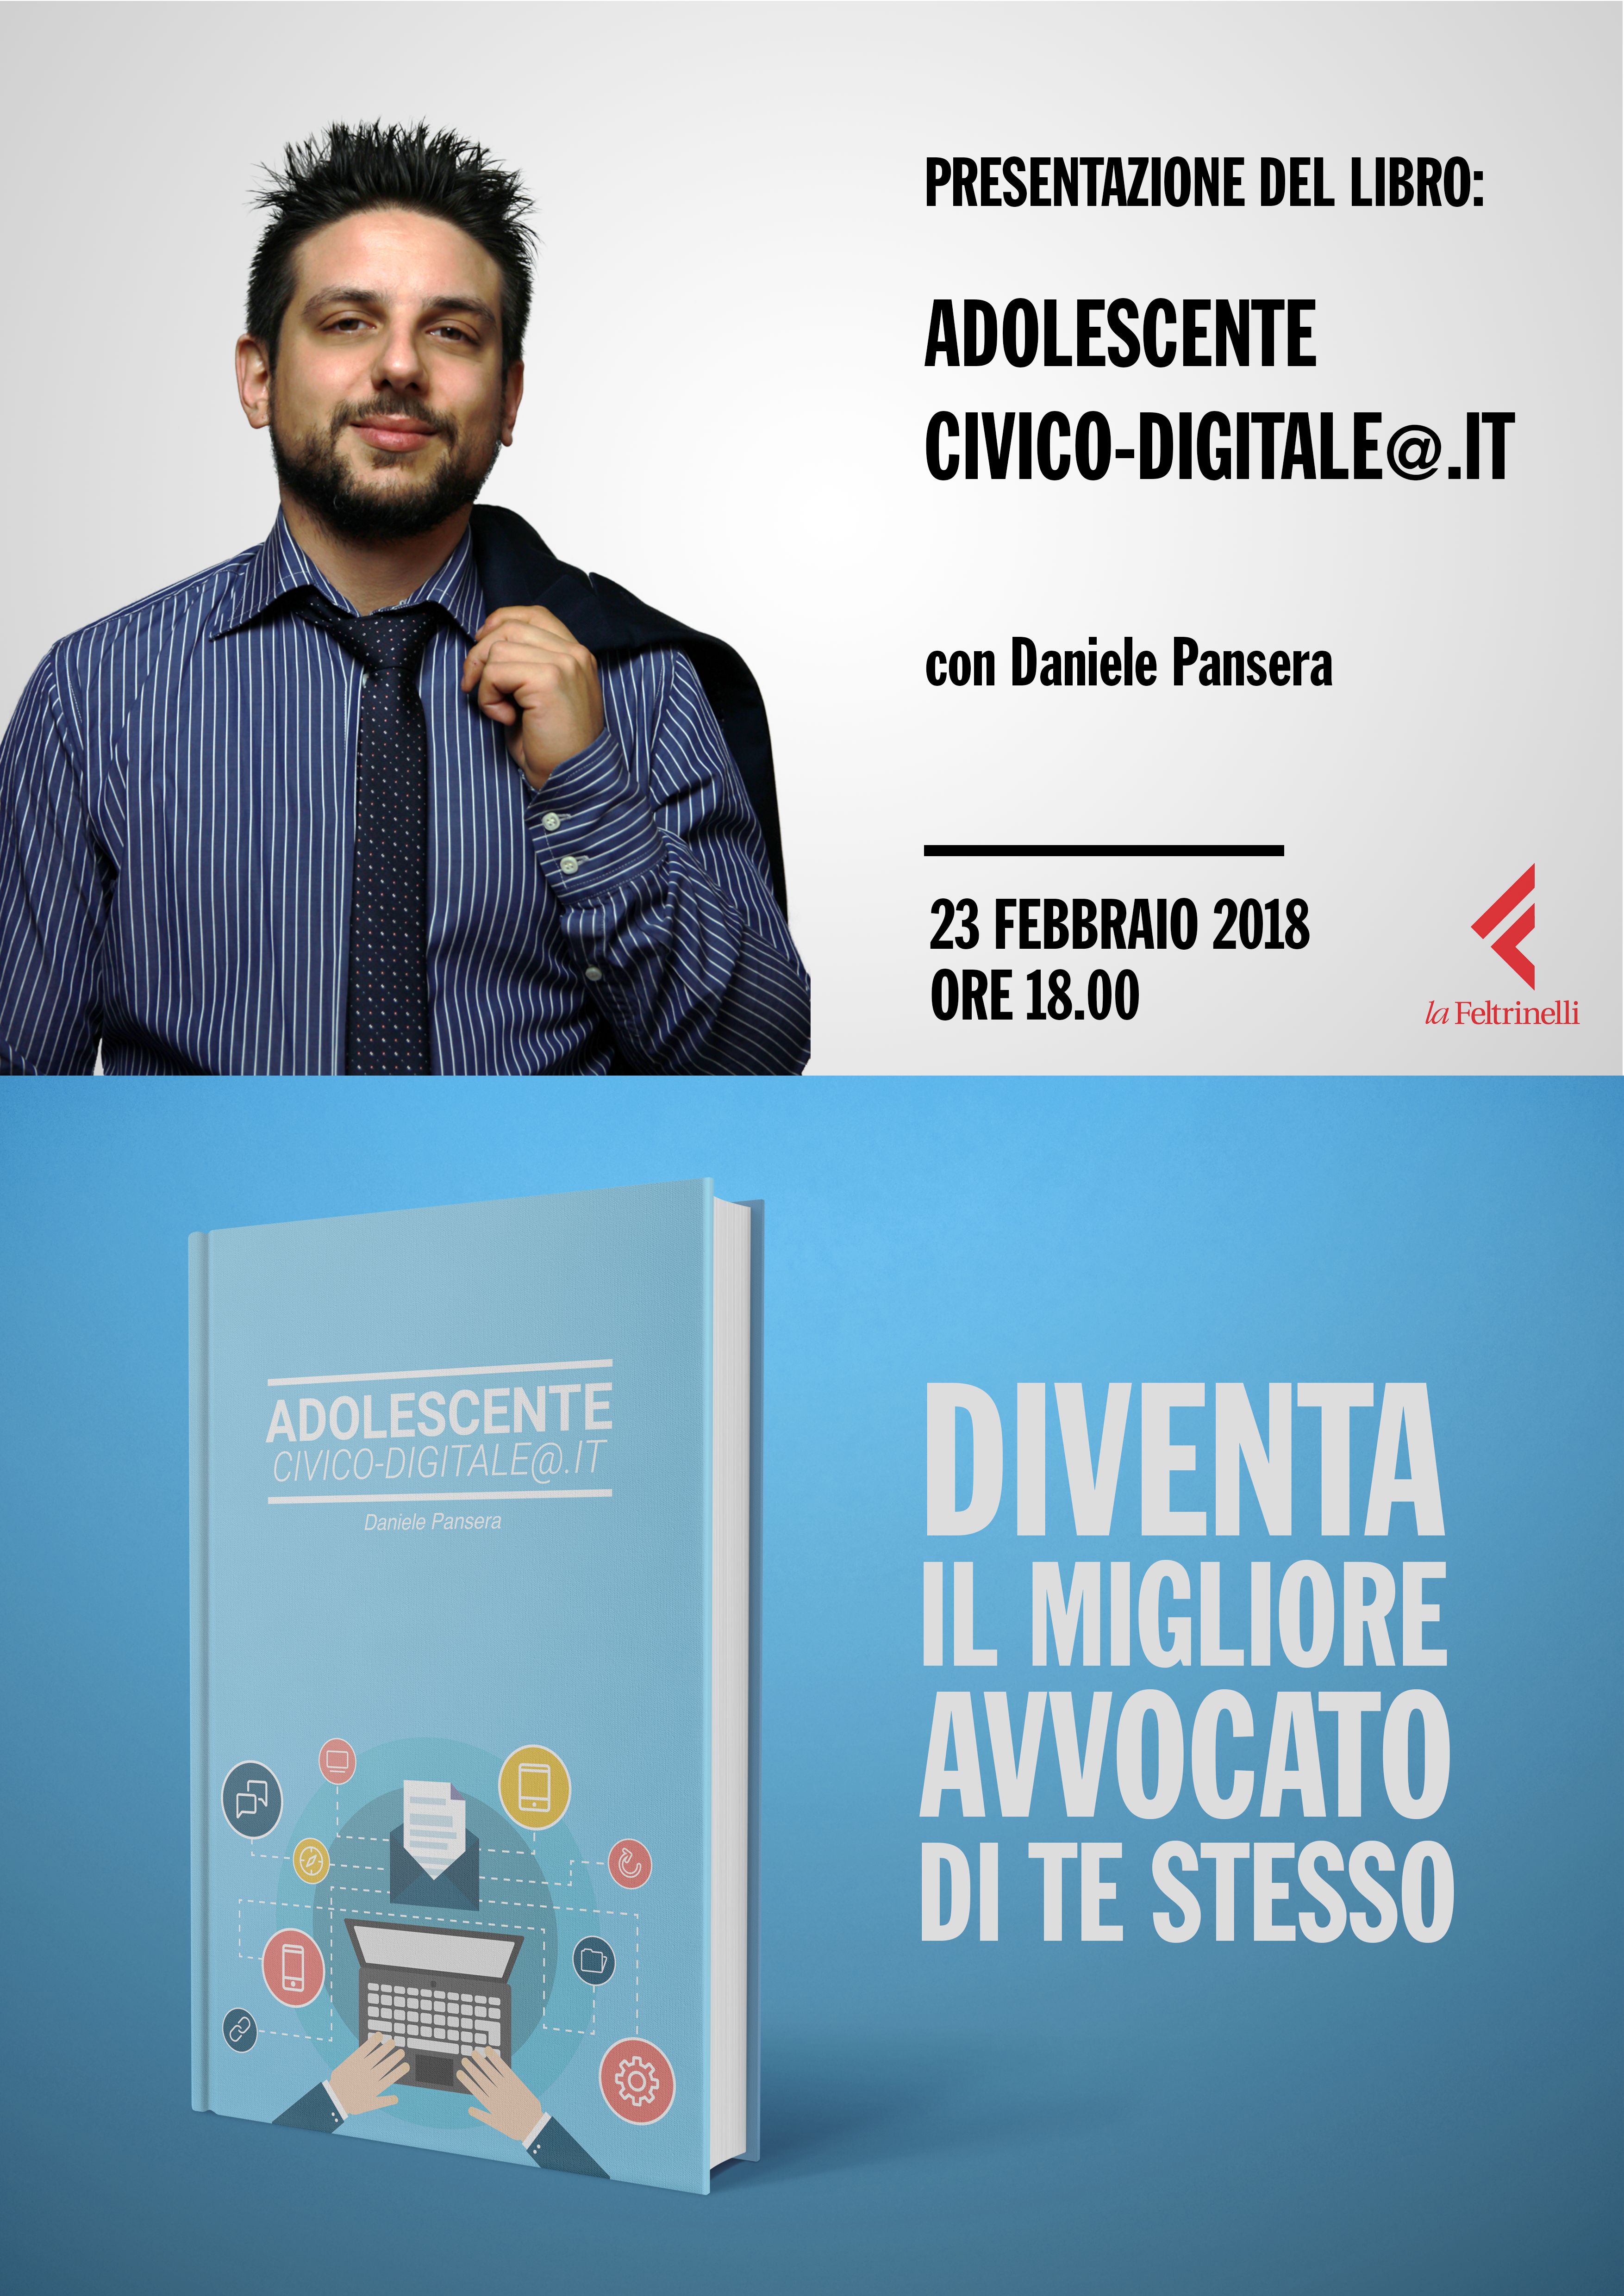 Libri: Adolescente Civico-Digitale@.it di Daniele Pansera